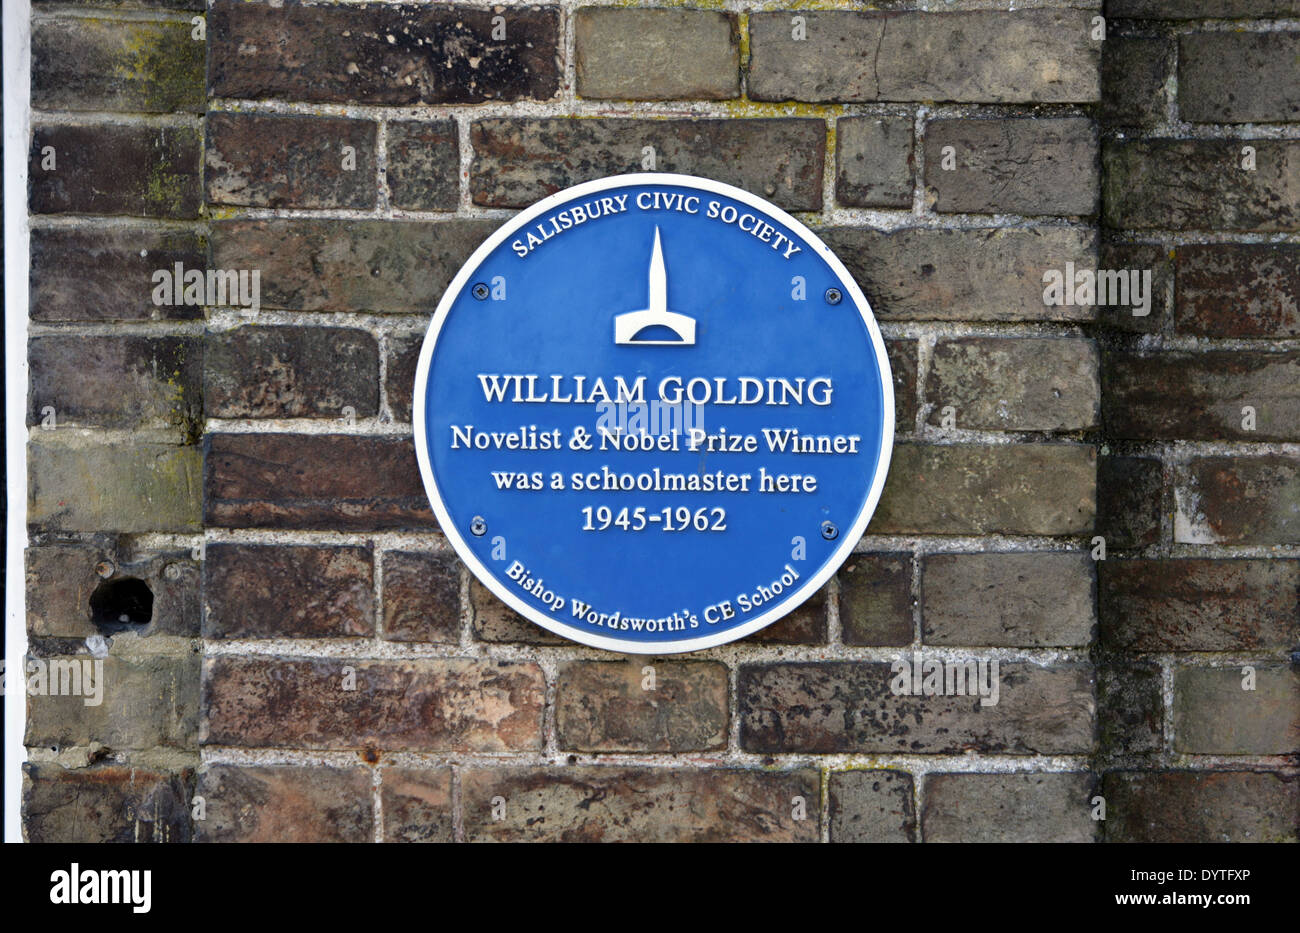 Salisbury bürgerlichen Gesellschaft Blue Plaque auf Bischof Wordsworth Schule: William Golding, Schriftsteller und Nobelpreisträger. Stockfoto